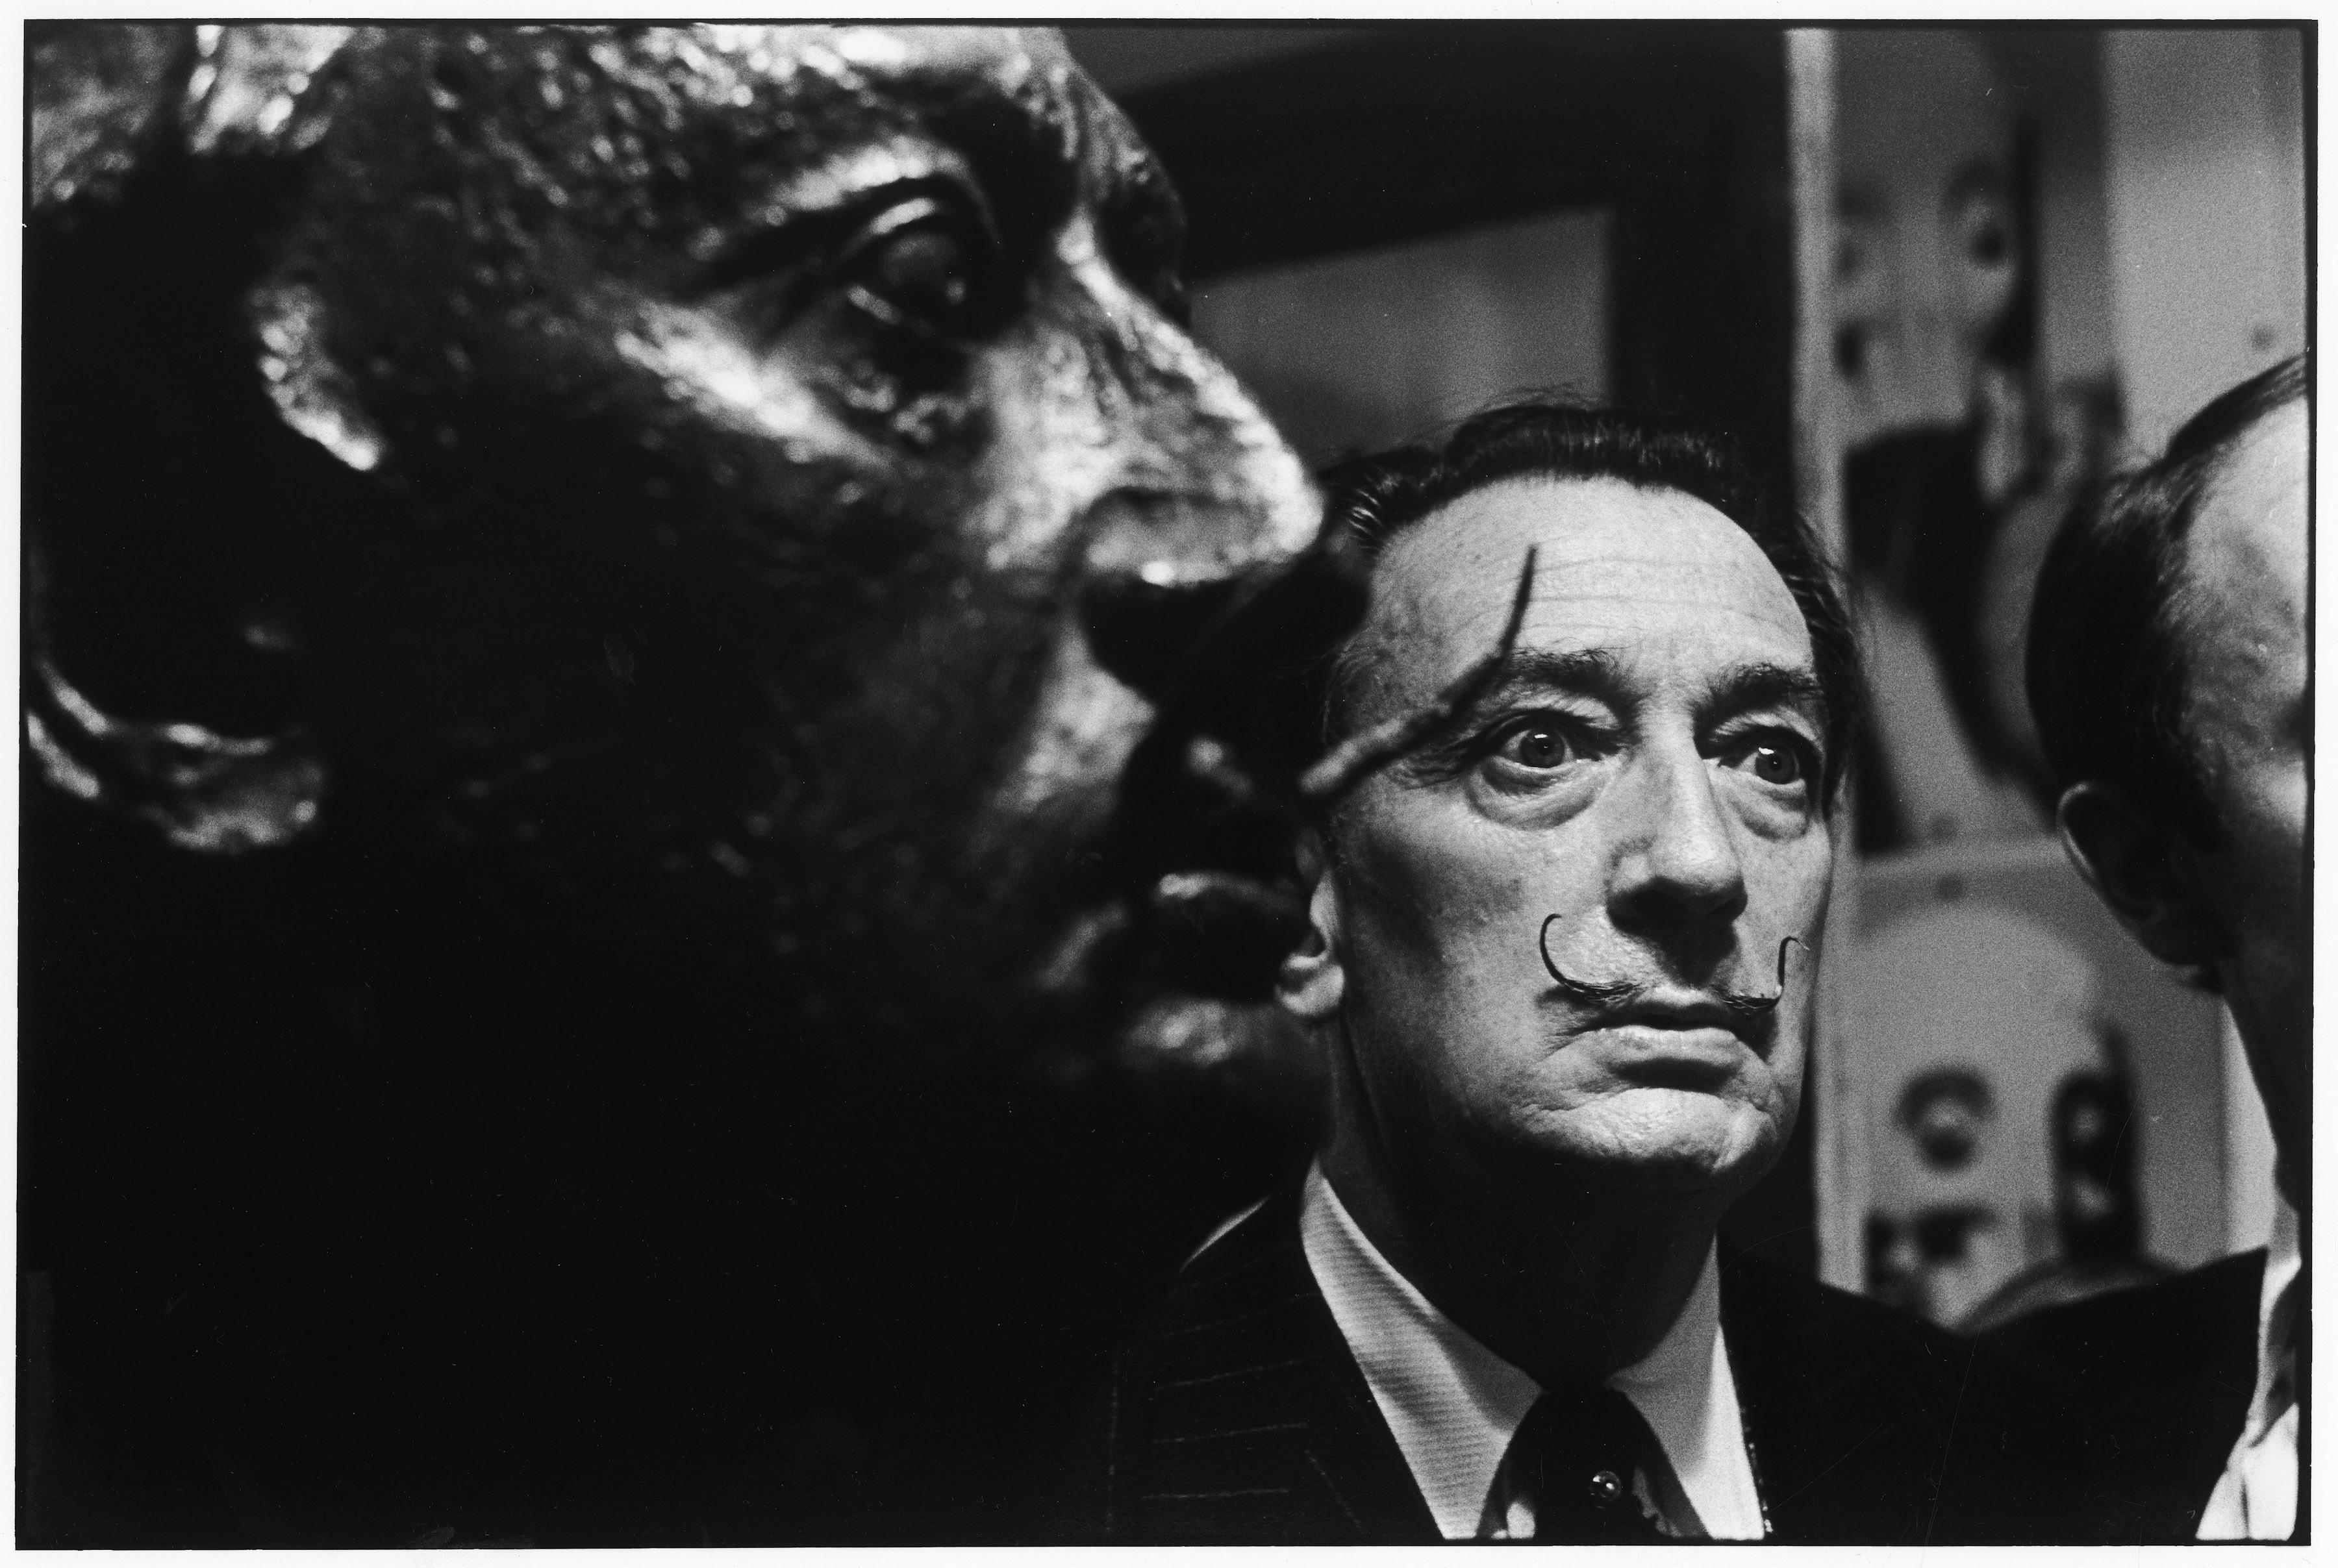 Salvador Dalí, 1963 - Elliott Erwitt (Black and White Photography)